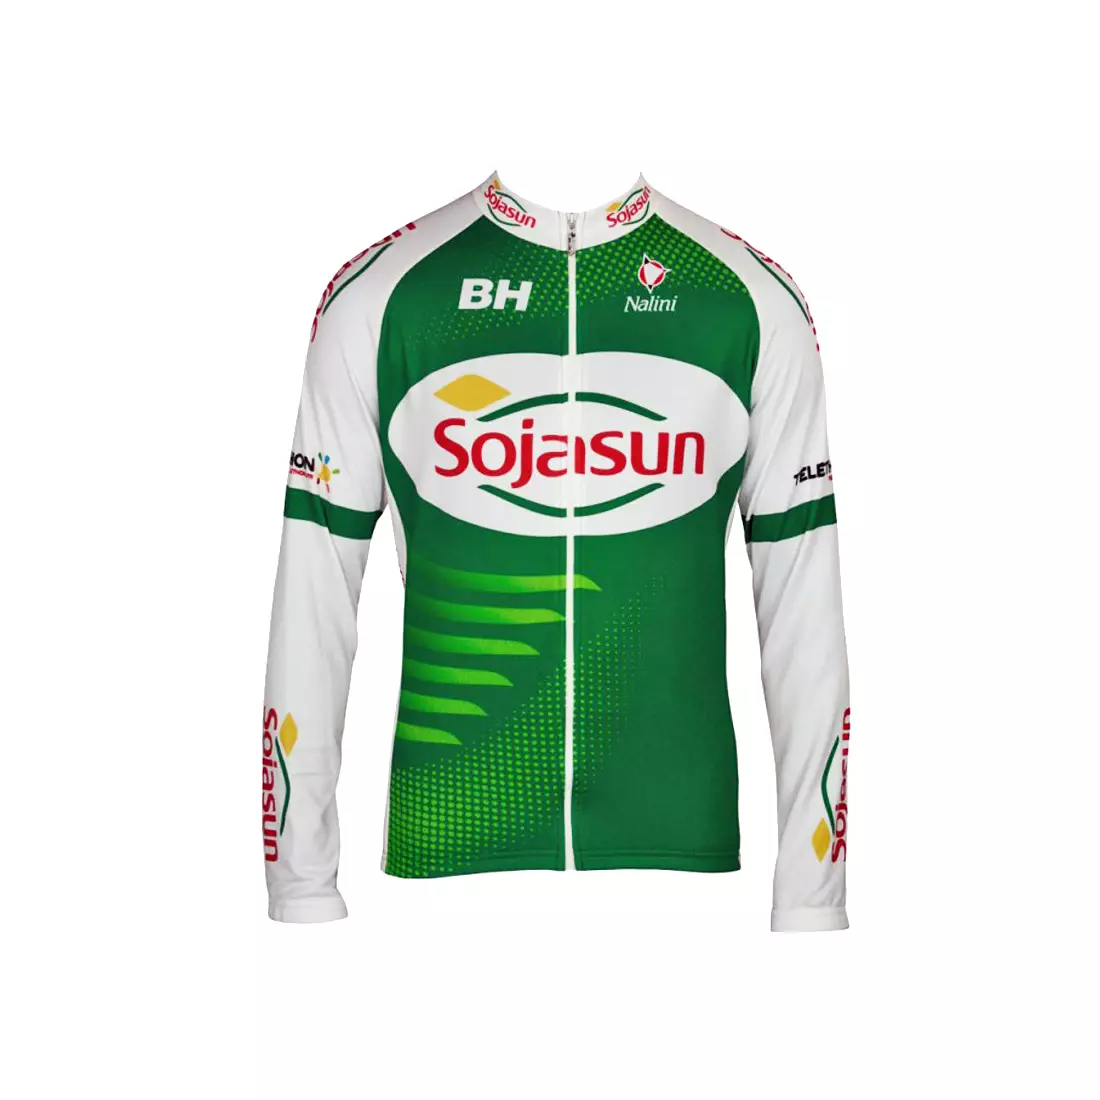 NALINI - TEAM SOJASUN 2013 - Radsport-Sweatshirt